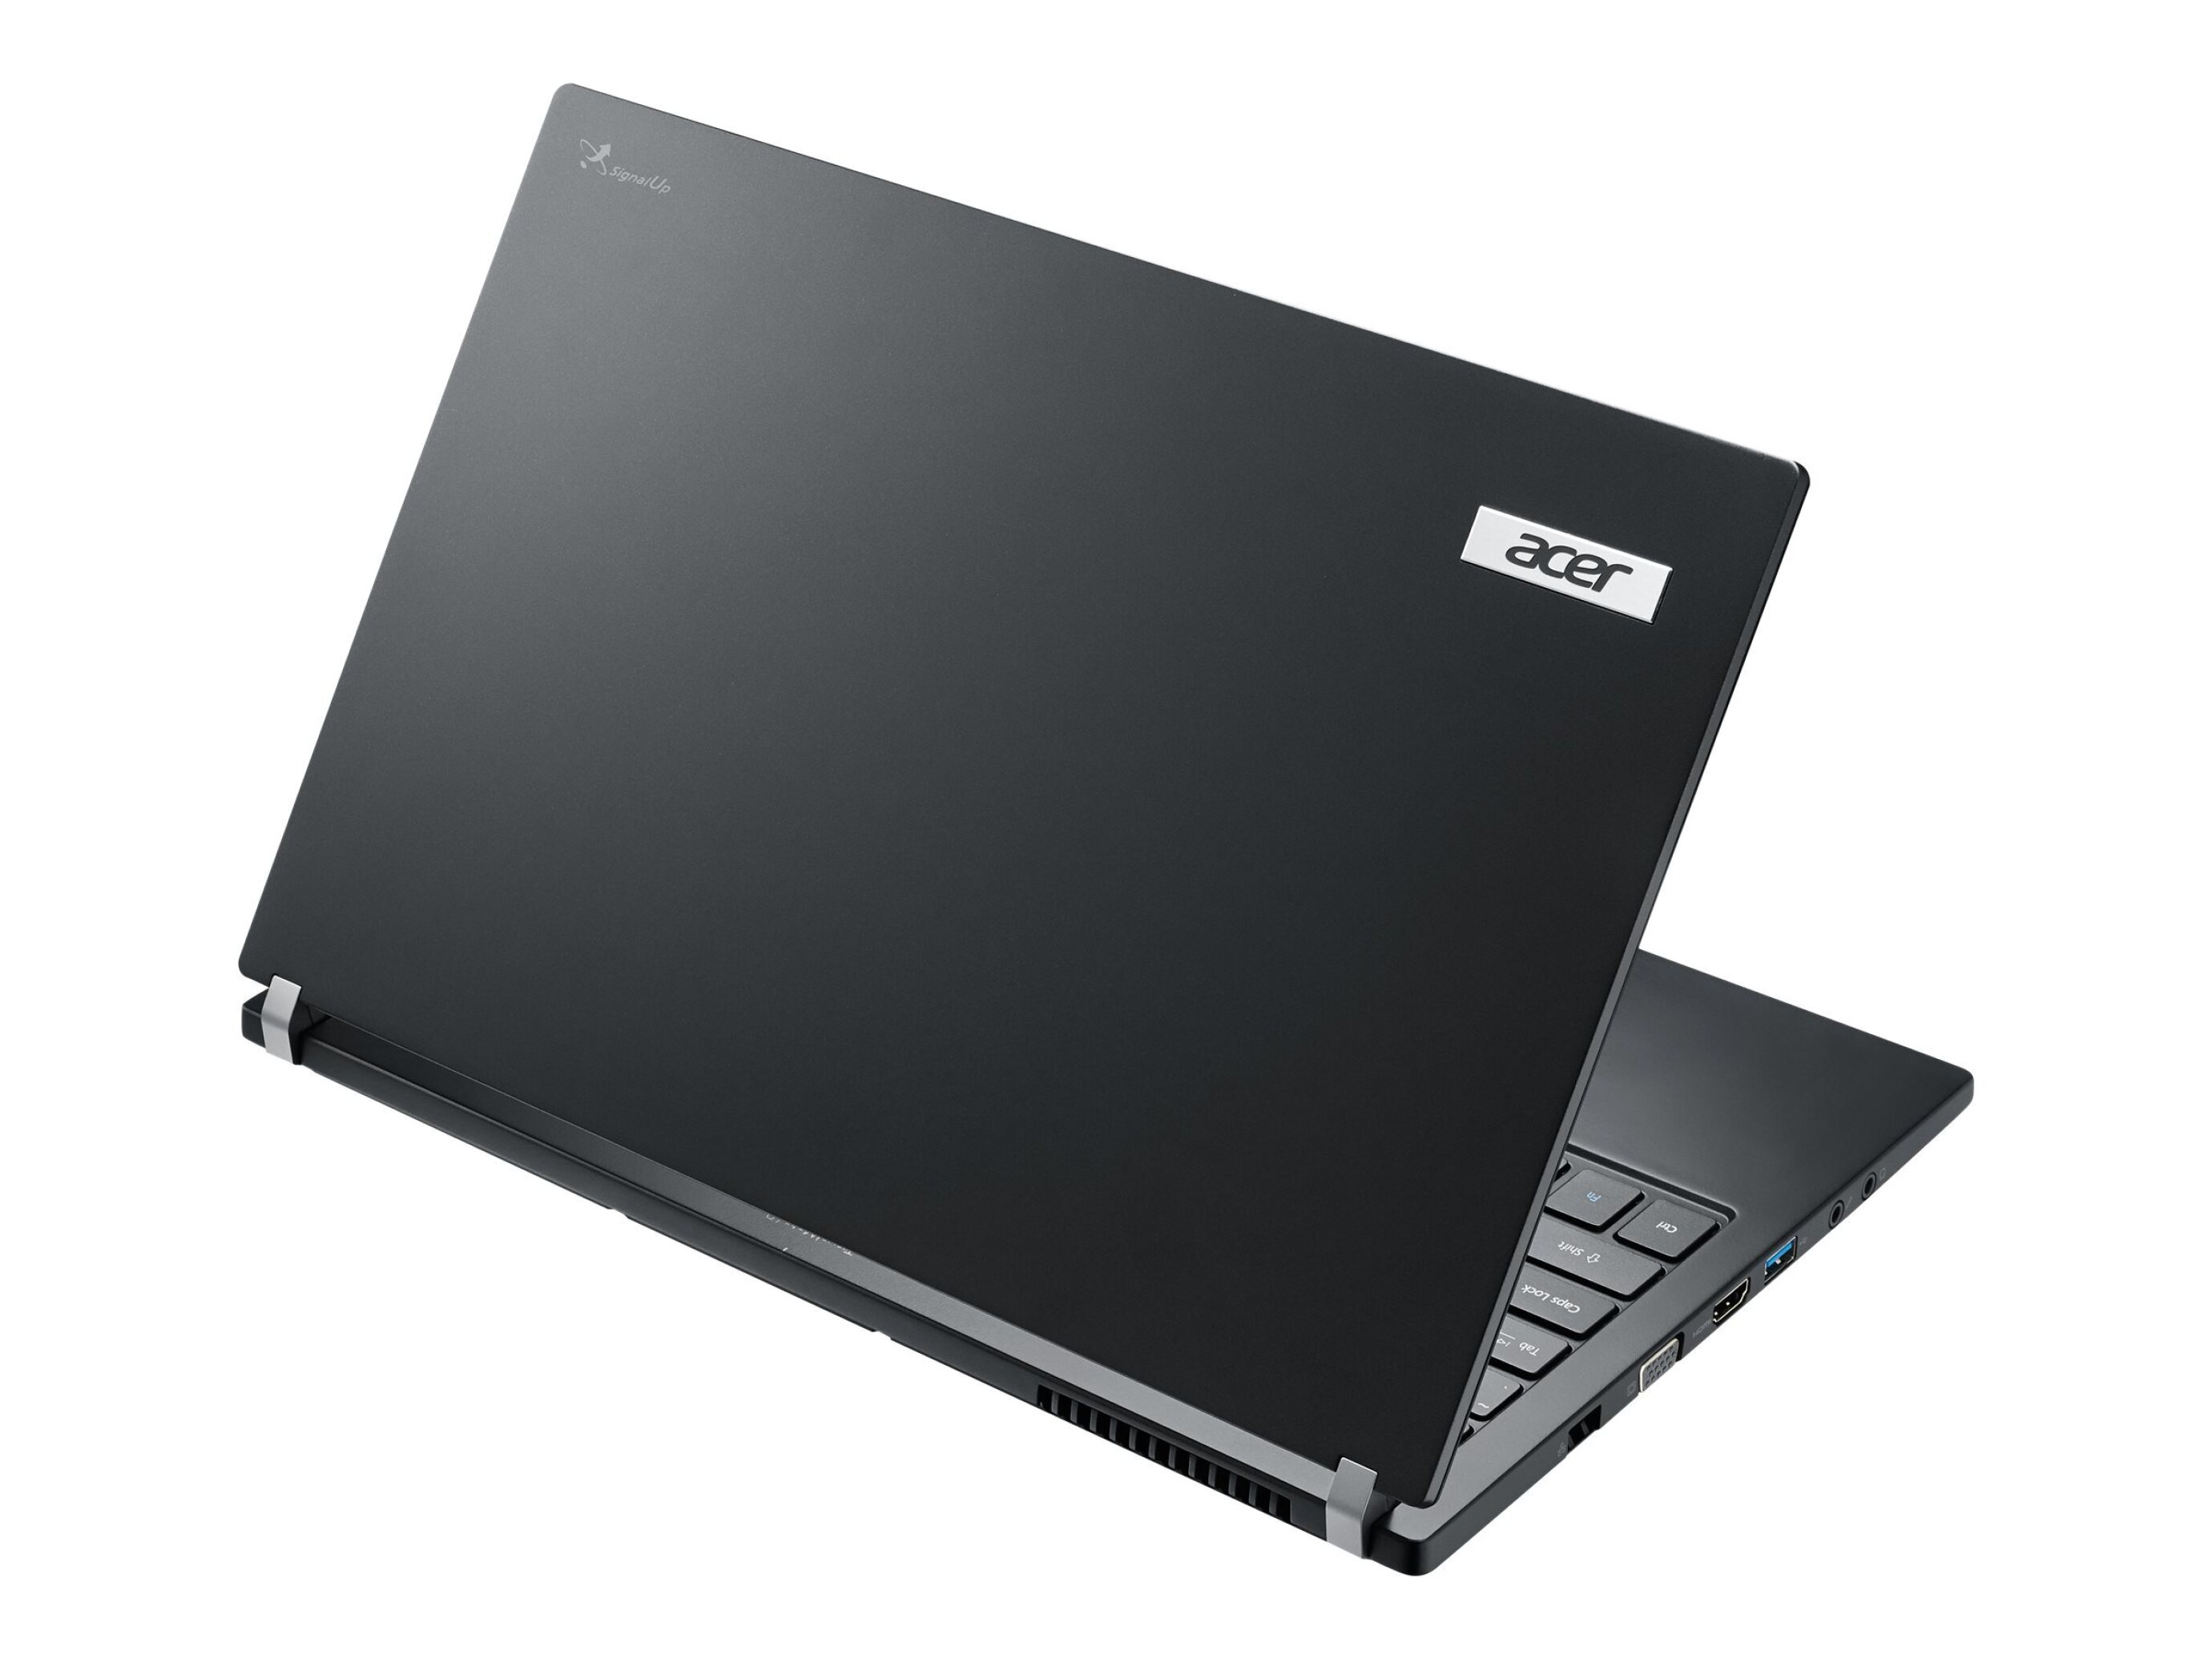  لپ تاپ ایسر مدل TravelMate p645 پردازنده CORE I7-5500U با گرافیک 2 گیگ رابو مارکت 